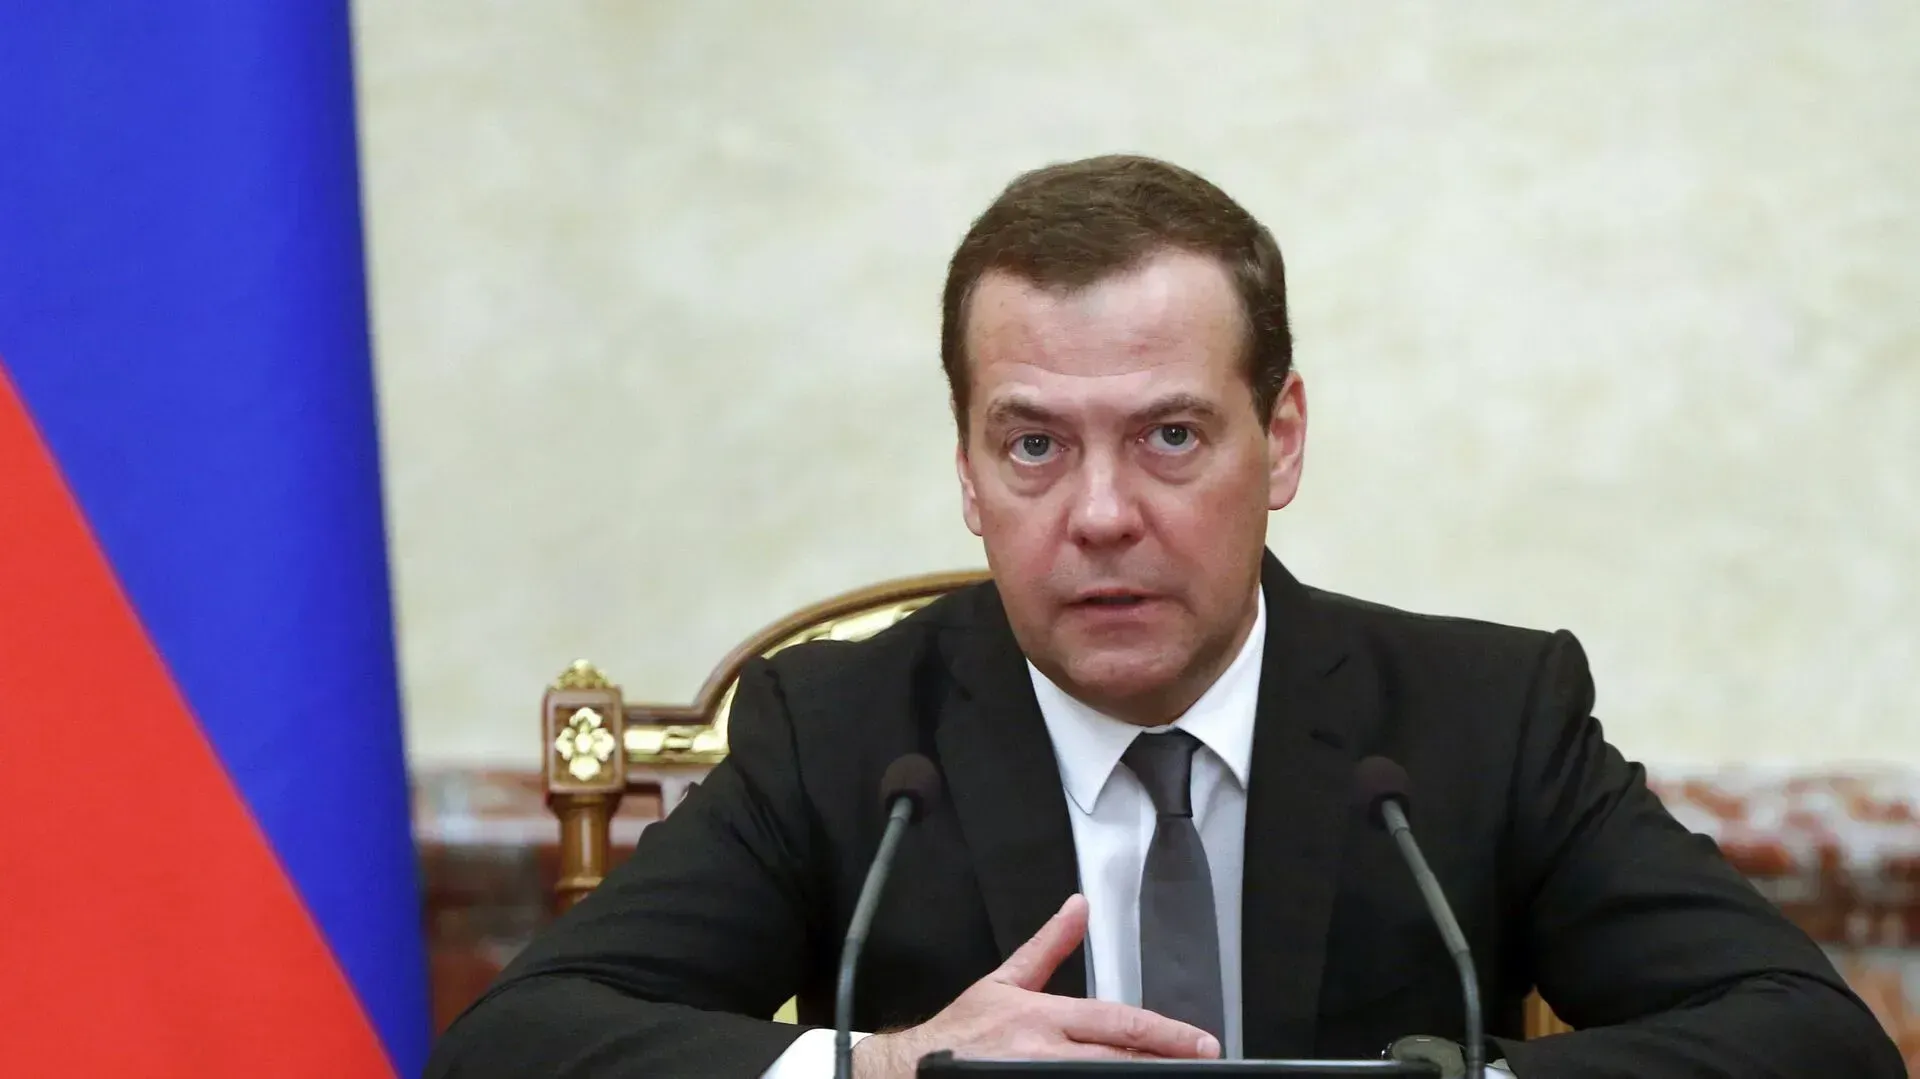 
											
											Medvedev uchinchi jahon urushi barcha uchun falokatli boʻlishini aytdi
											
											